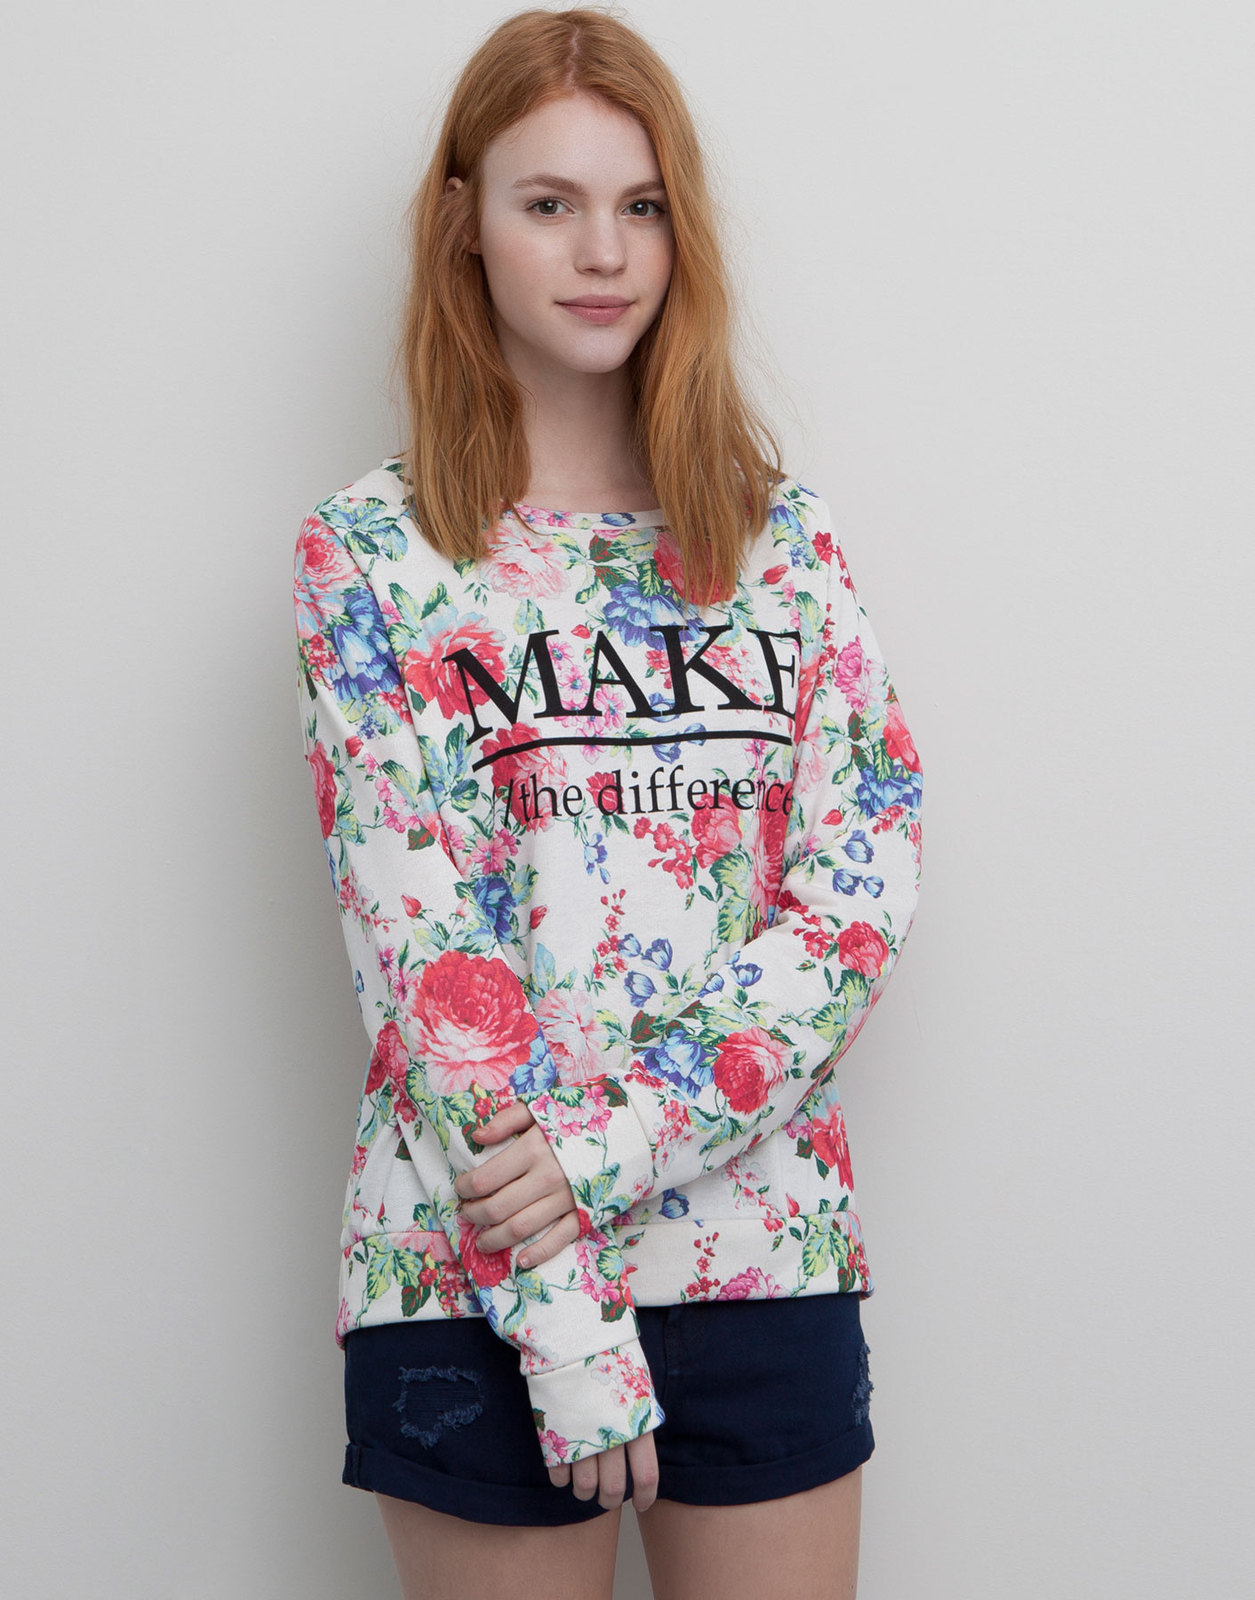 Pull and Bear nagyvirágos színes feliratos pulóver 2015.02.22 fotója